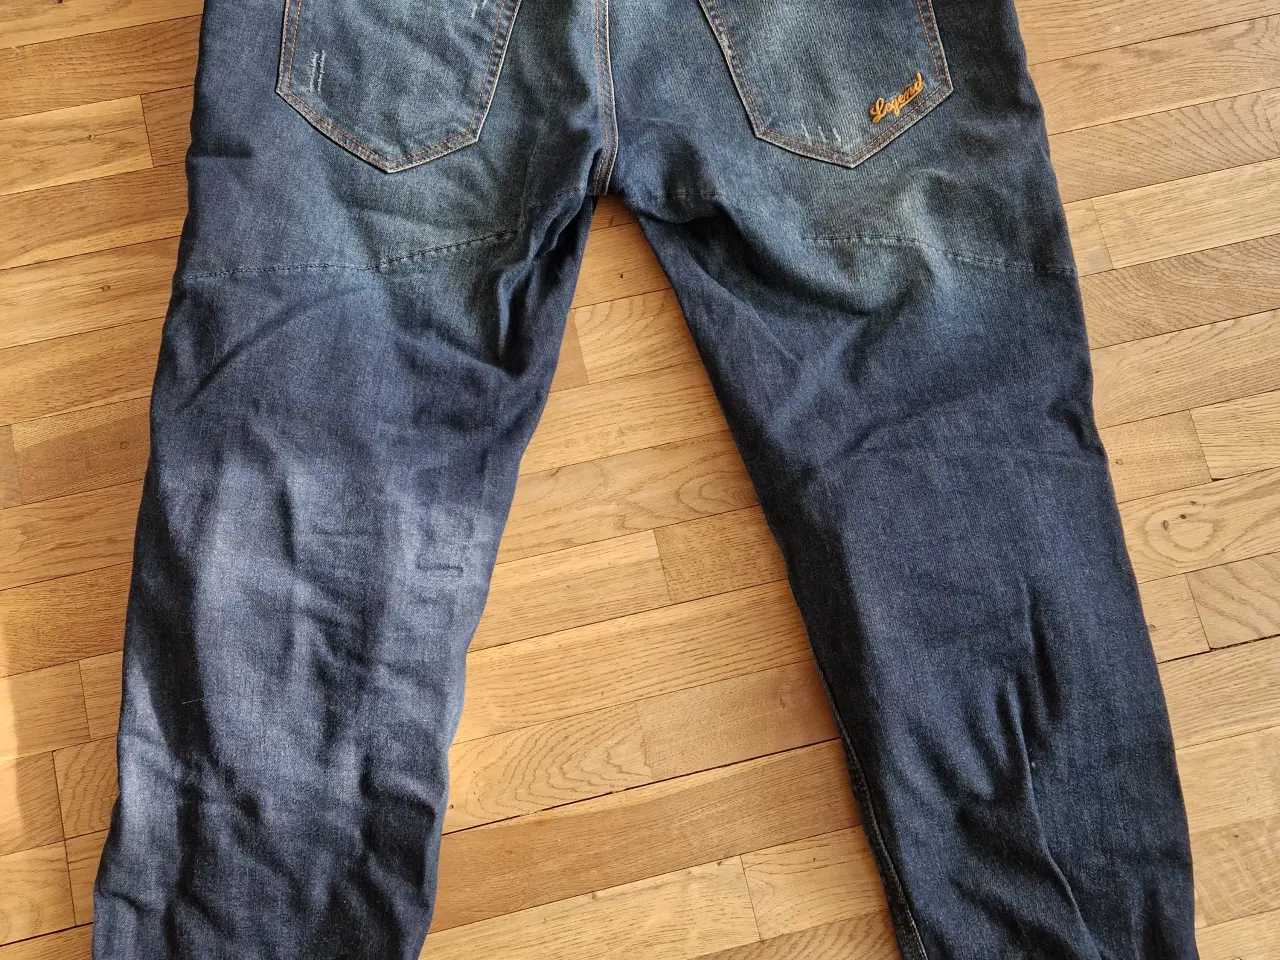 Billede 3 - PMJ MC jeans med Twaron beskyttelse.